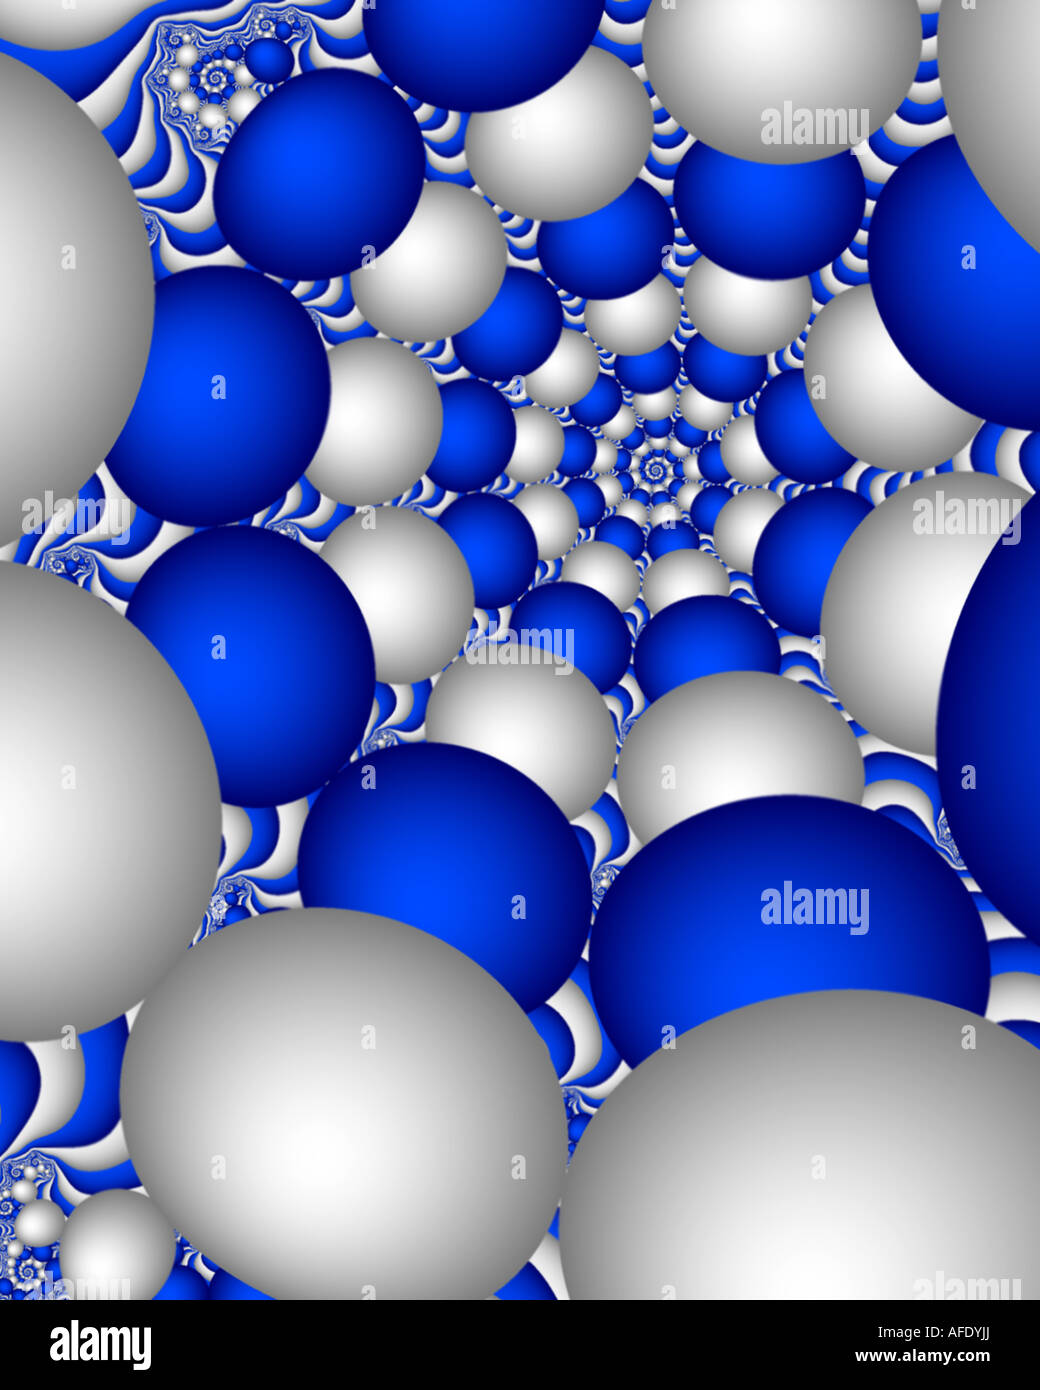 Résumé de l'image fractale en ordre décroissant des boules dans l'infini Banque D'Images